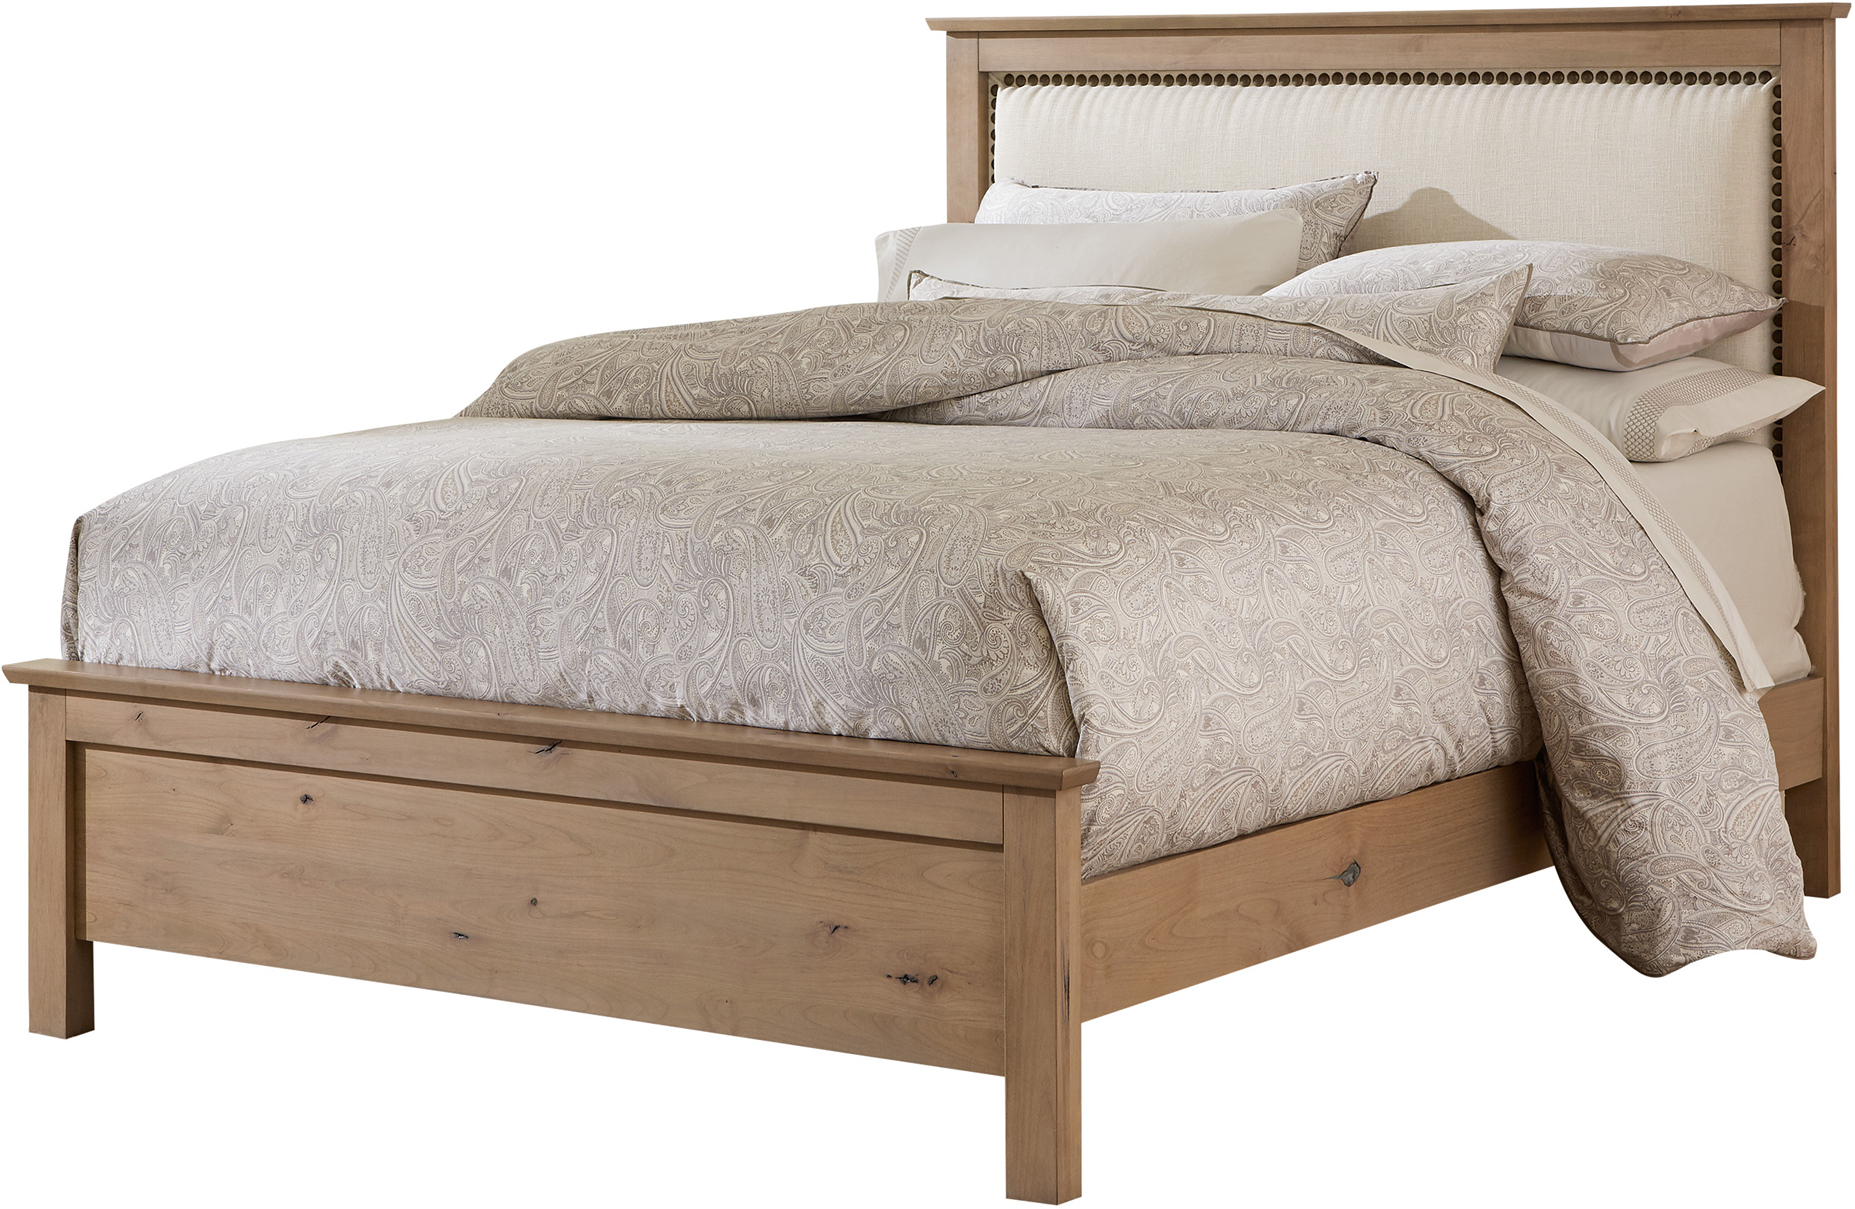 alder wood bedroom furniture